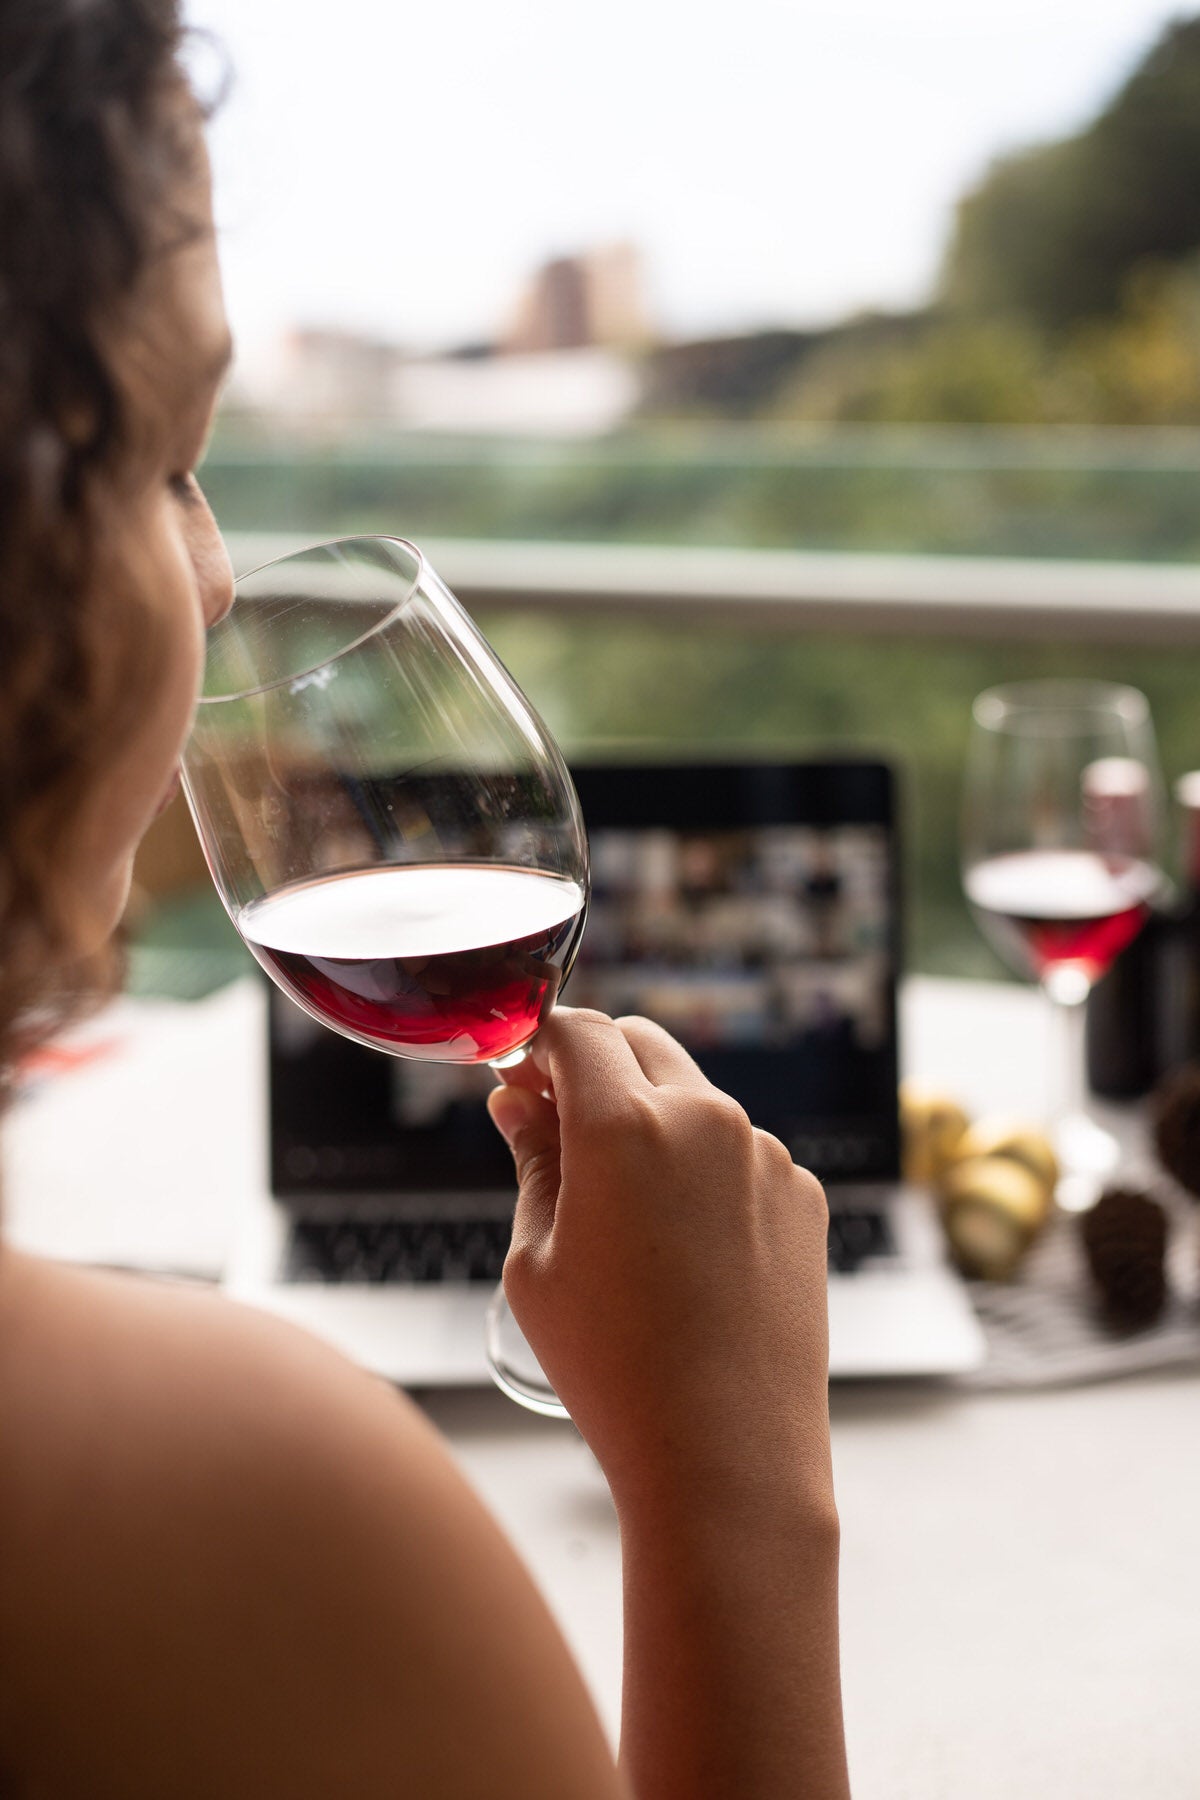 Virtual Wine Tasting